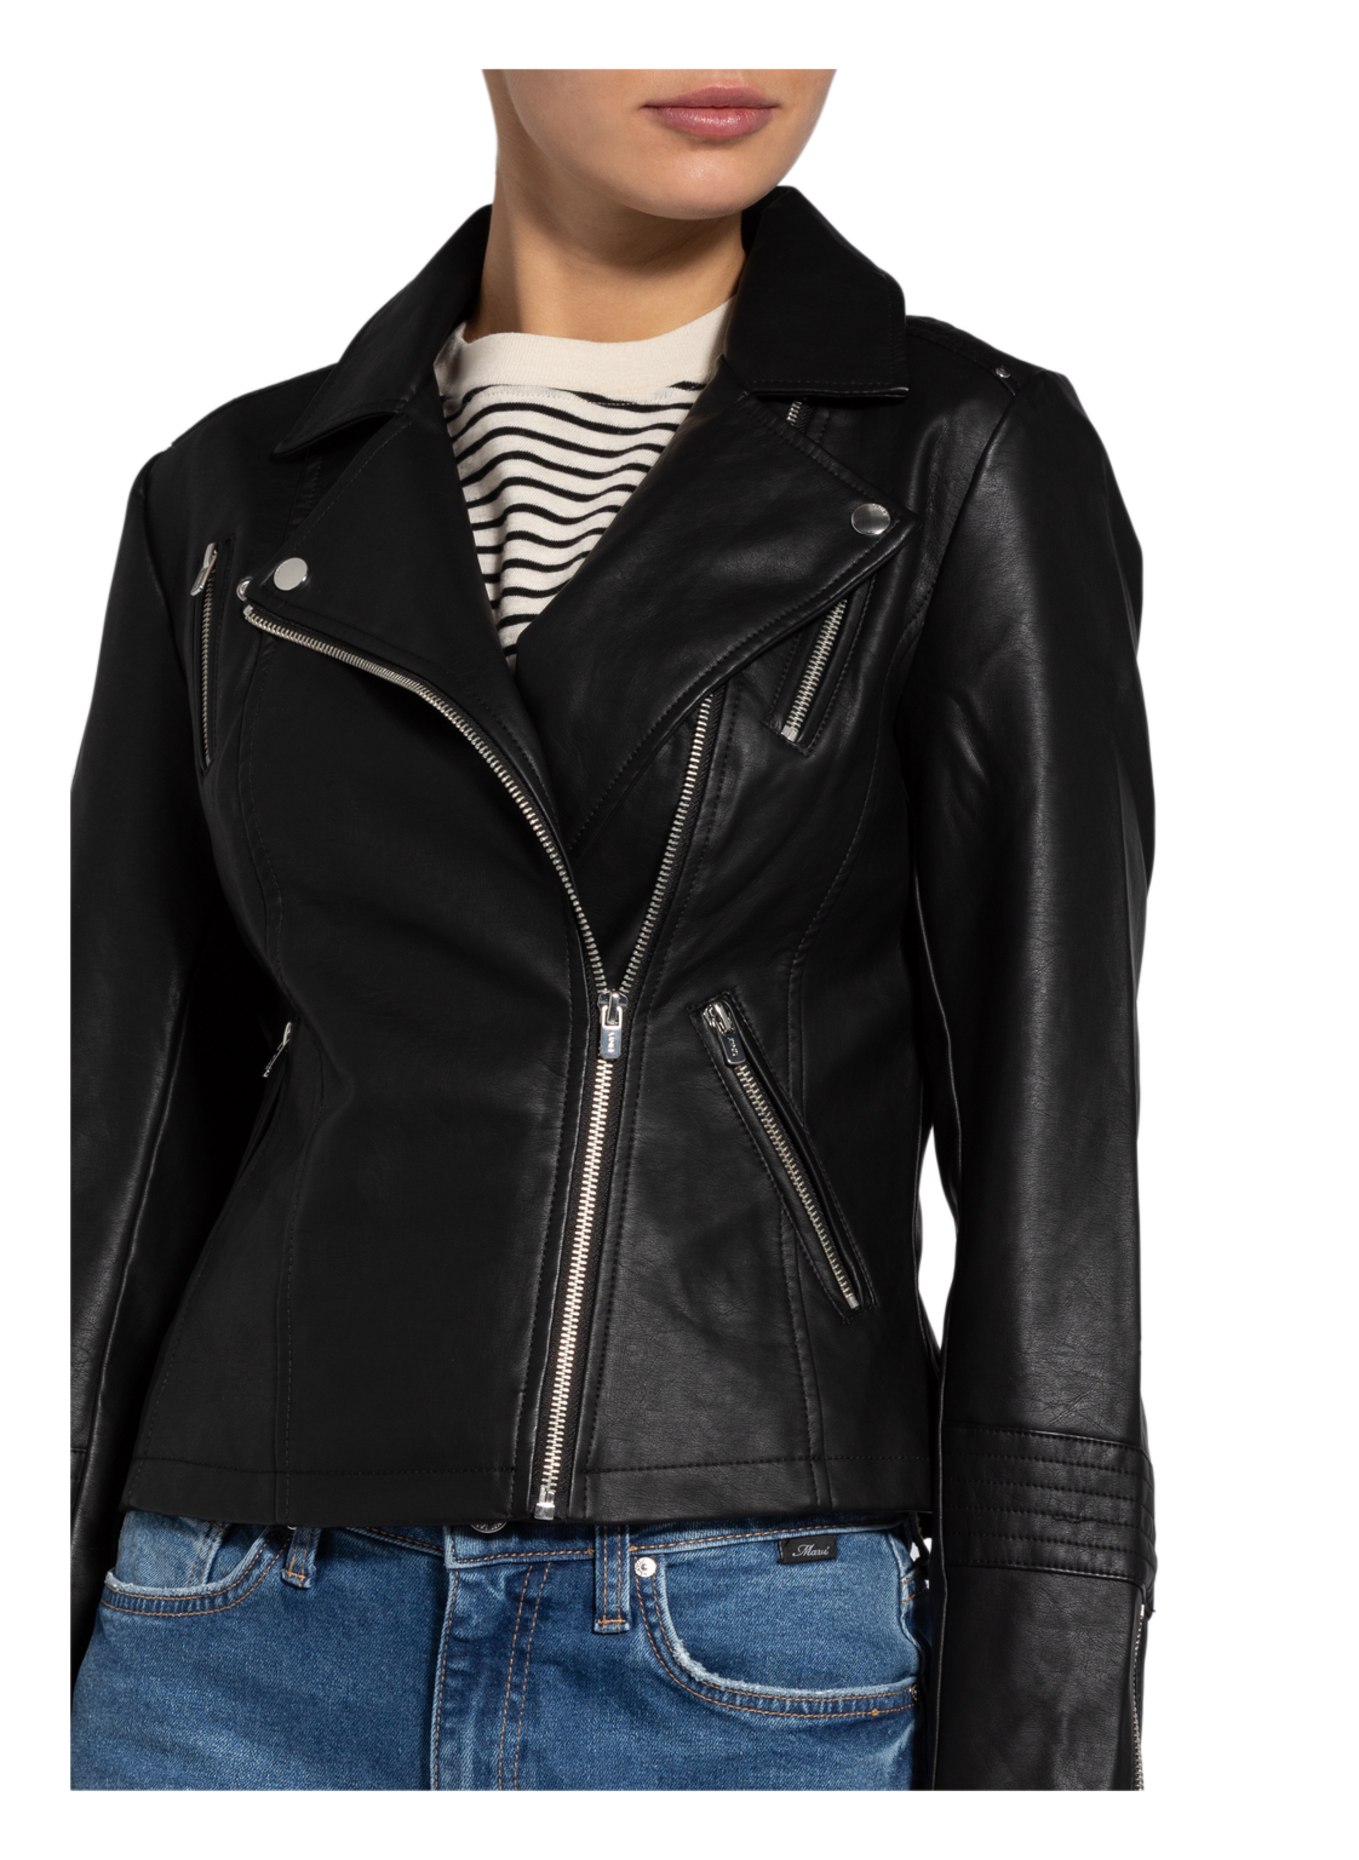 ONLY Biker jacket in leather look, Color: BLACK (Image 4)